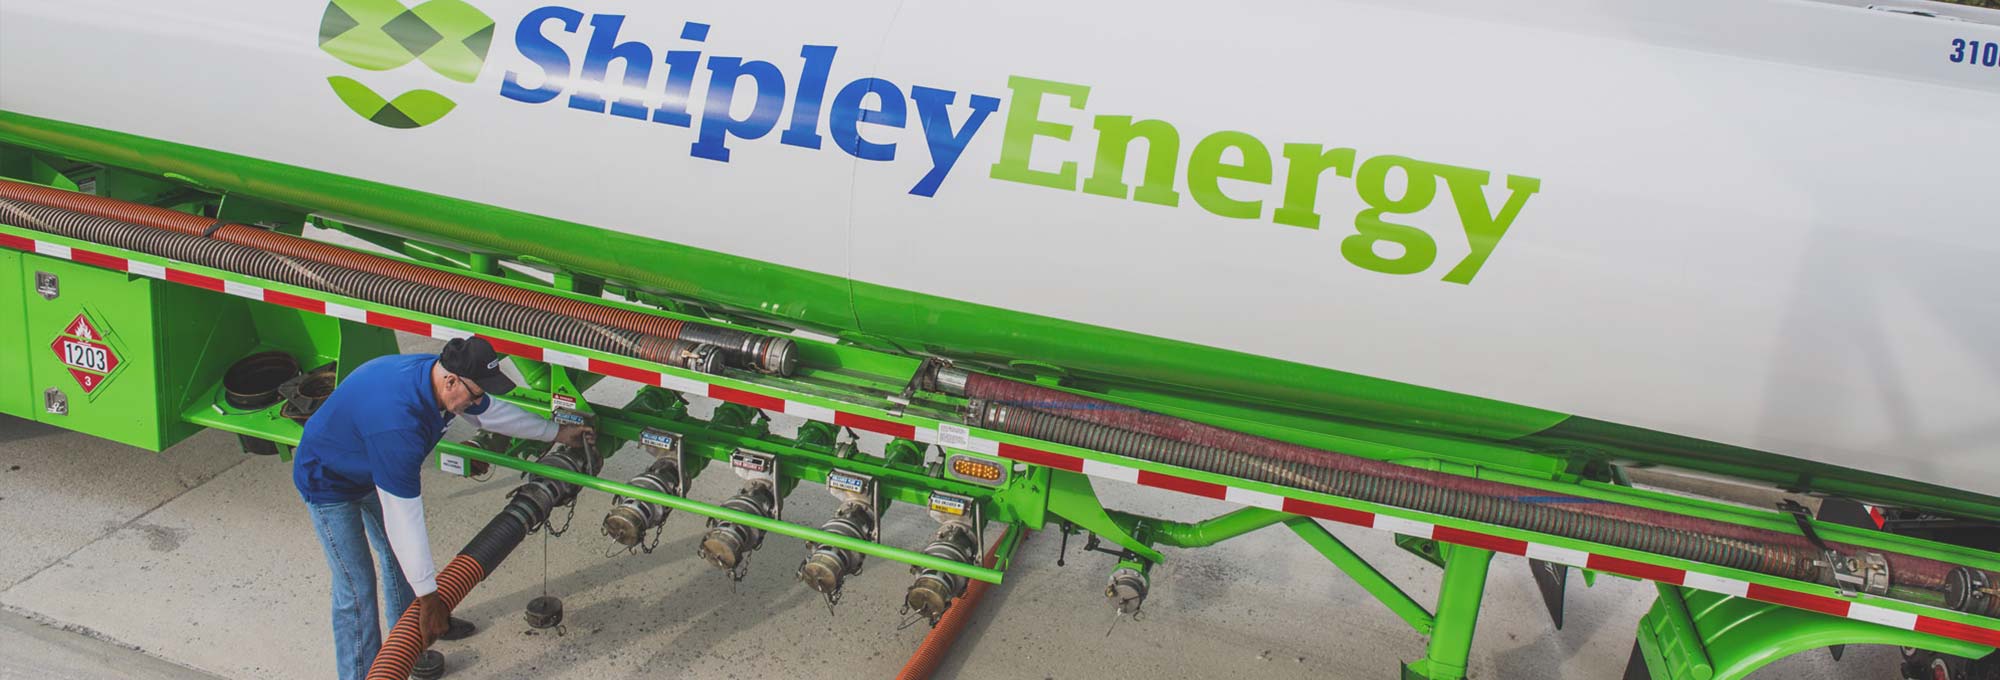 Why Choose Shipley Energy